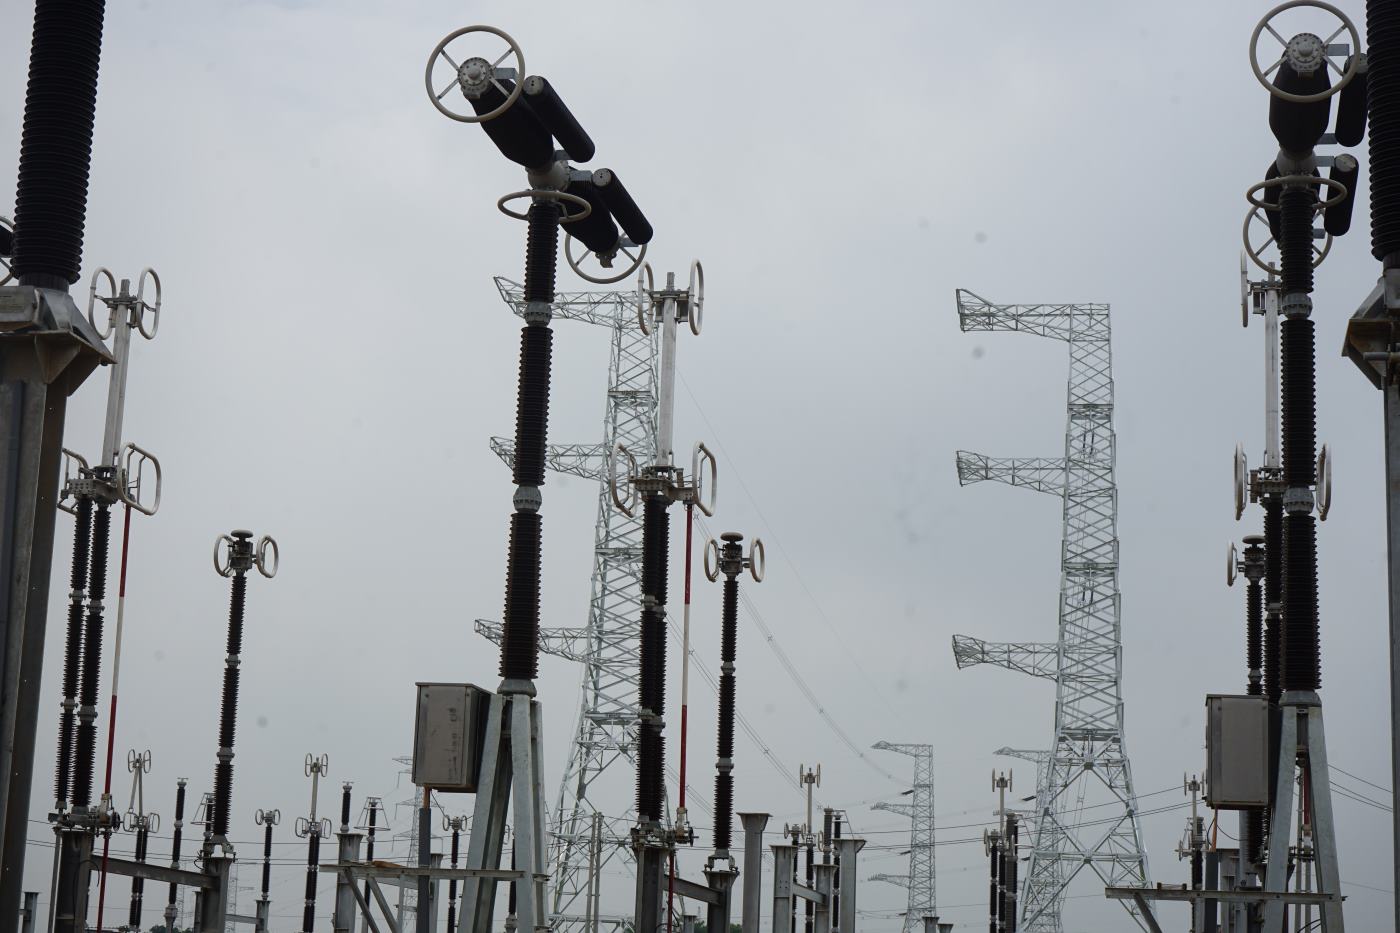 Dự án này có nhiệm vụ tăng cường cung cấp điện cho phụ tải tỉnh Thanh Hóa và Bắc Trung Bộ, do Tổng công ty Truyền tải điện Quốc gia (EVNNPT) làm chủ đầu tư. Ảnh: Quách Du